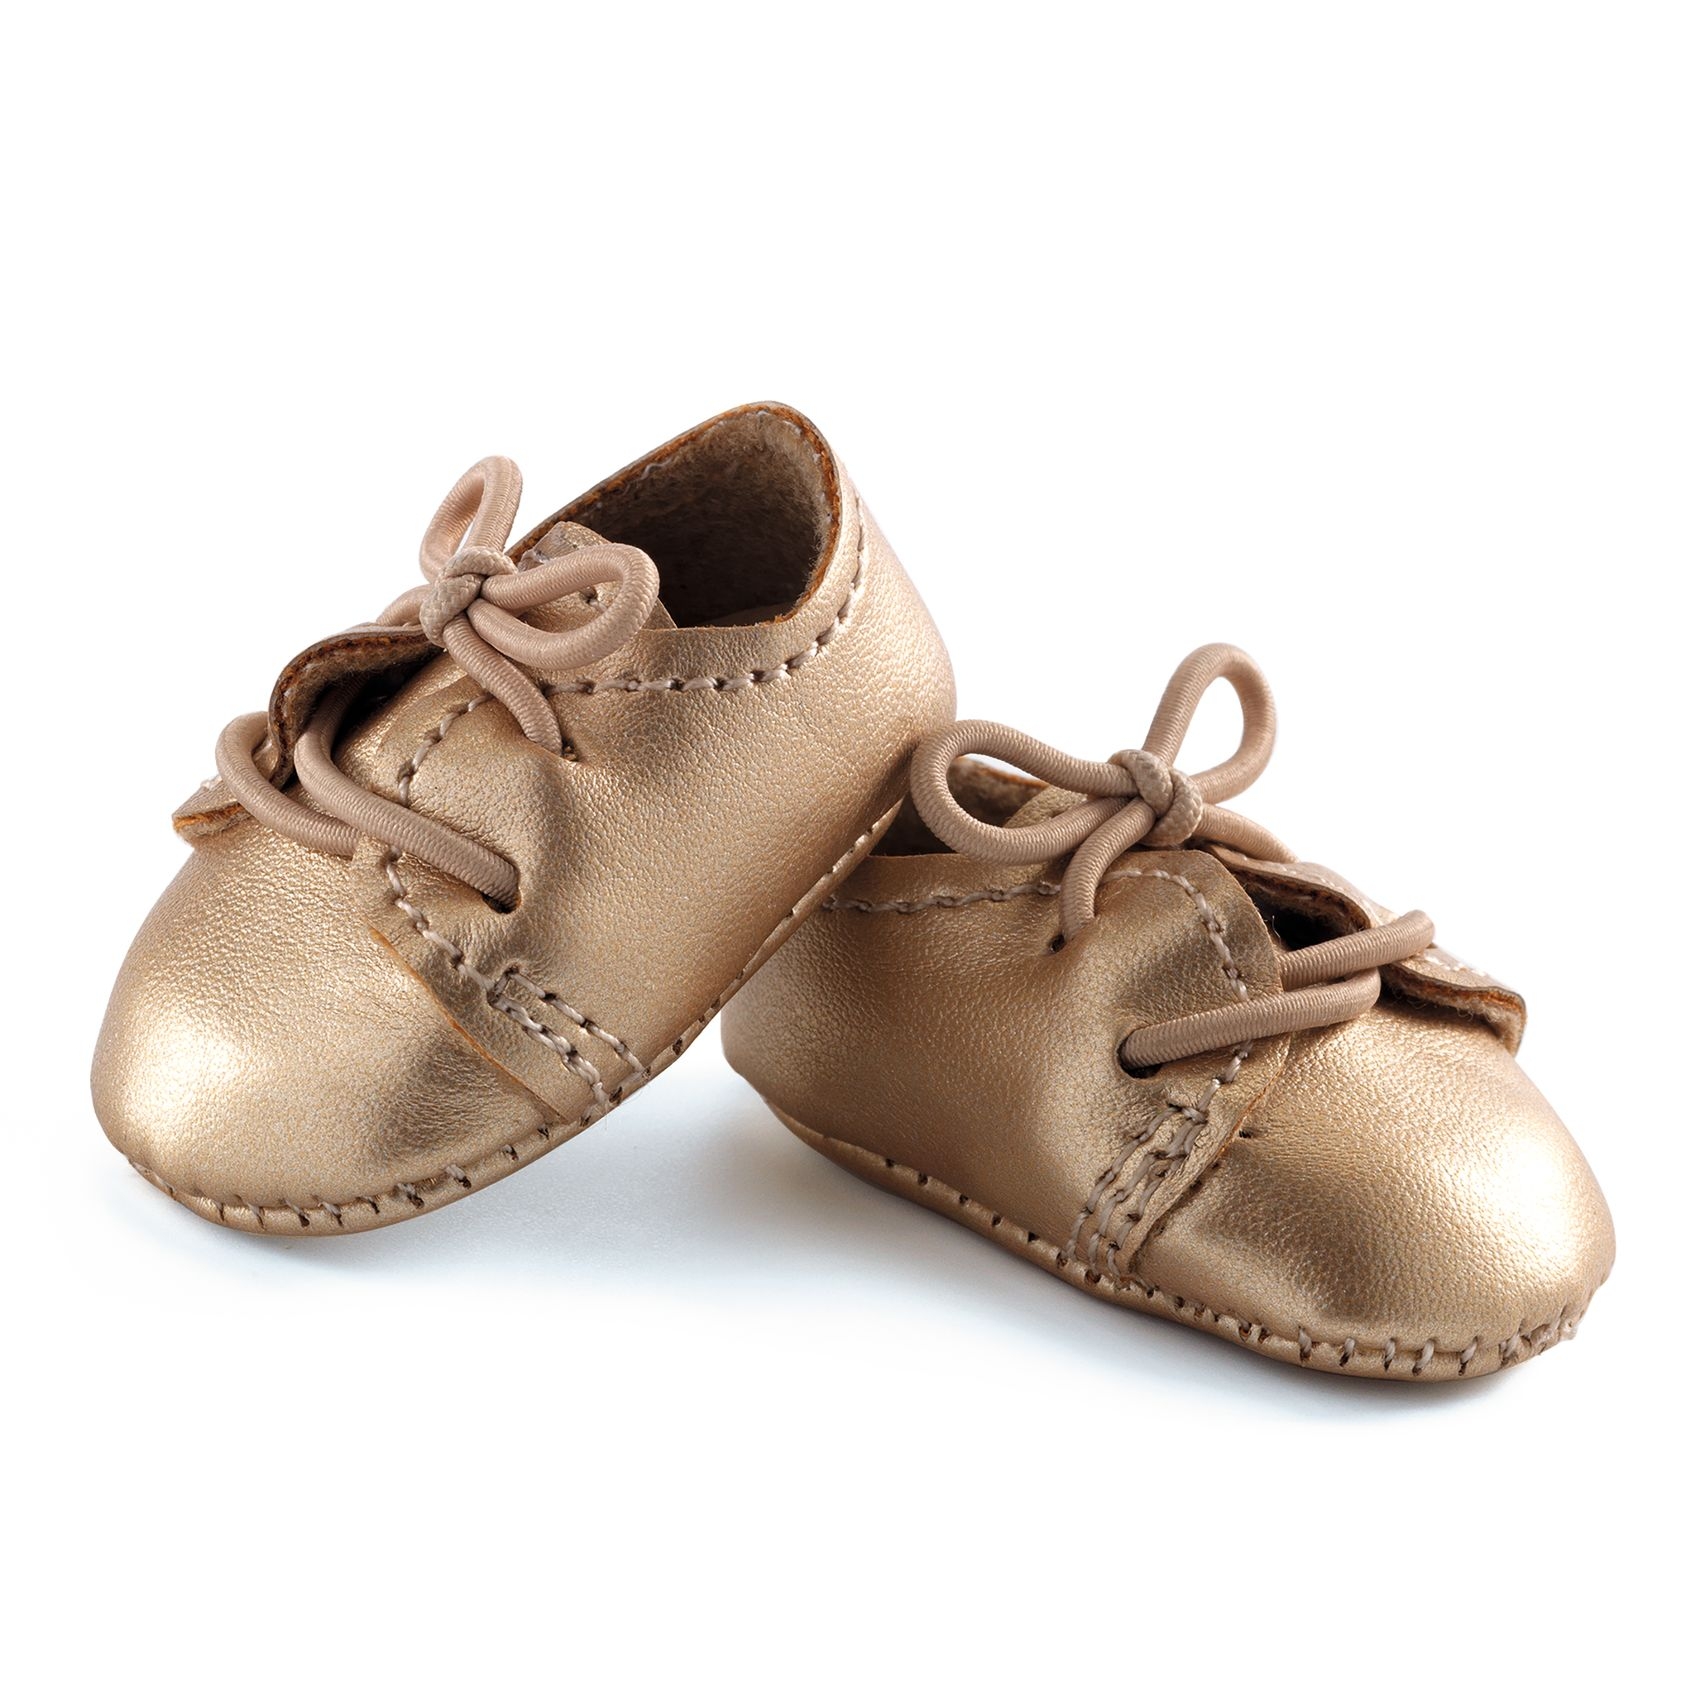 Játékbaba cipő - Arany cipőcske - Golden shoes - 0